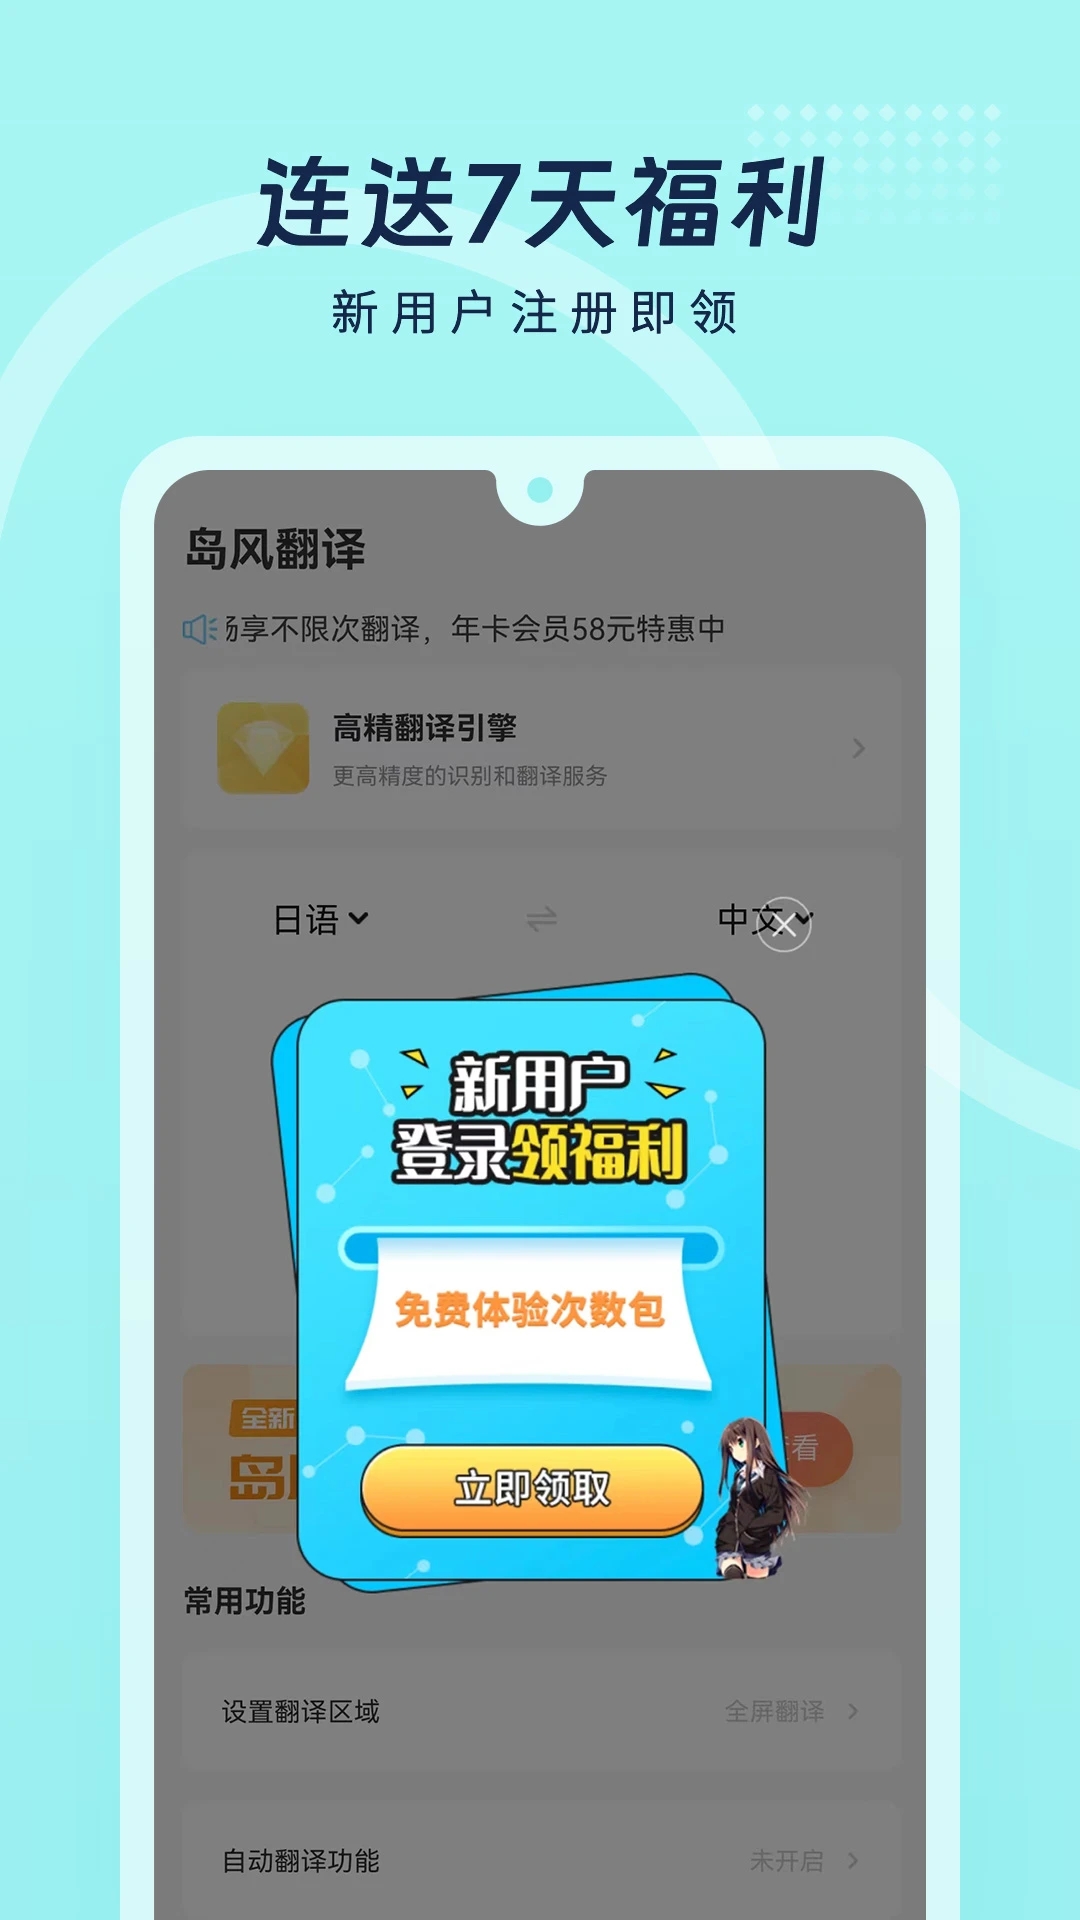 岛风游戏翻译大师appv3.7.5